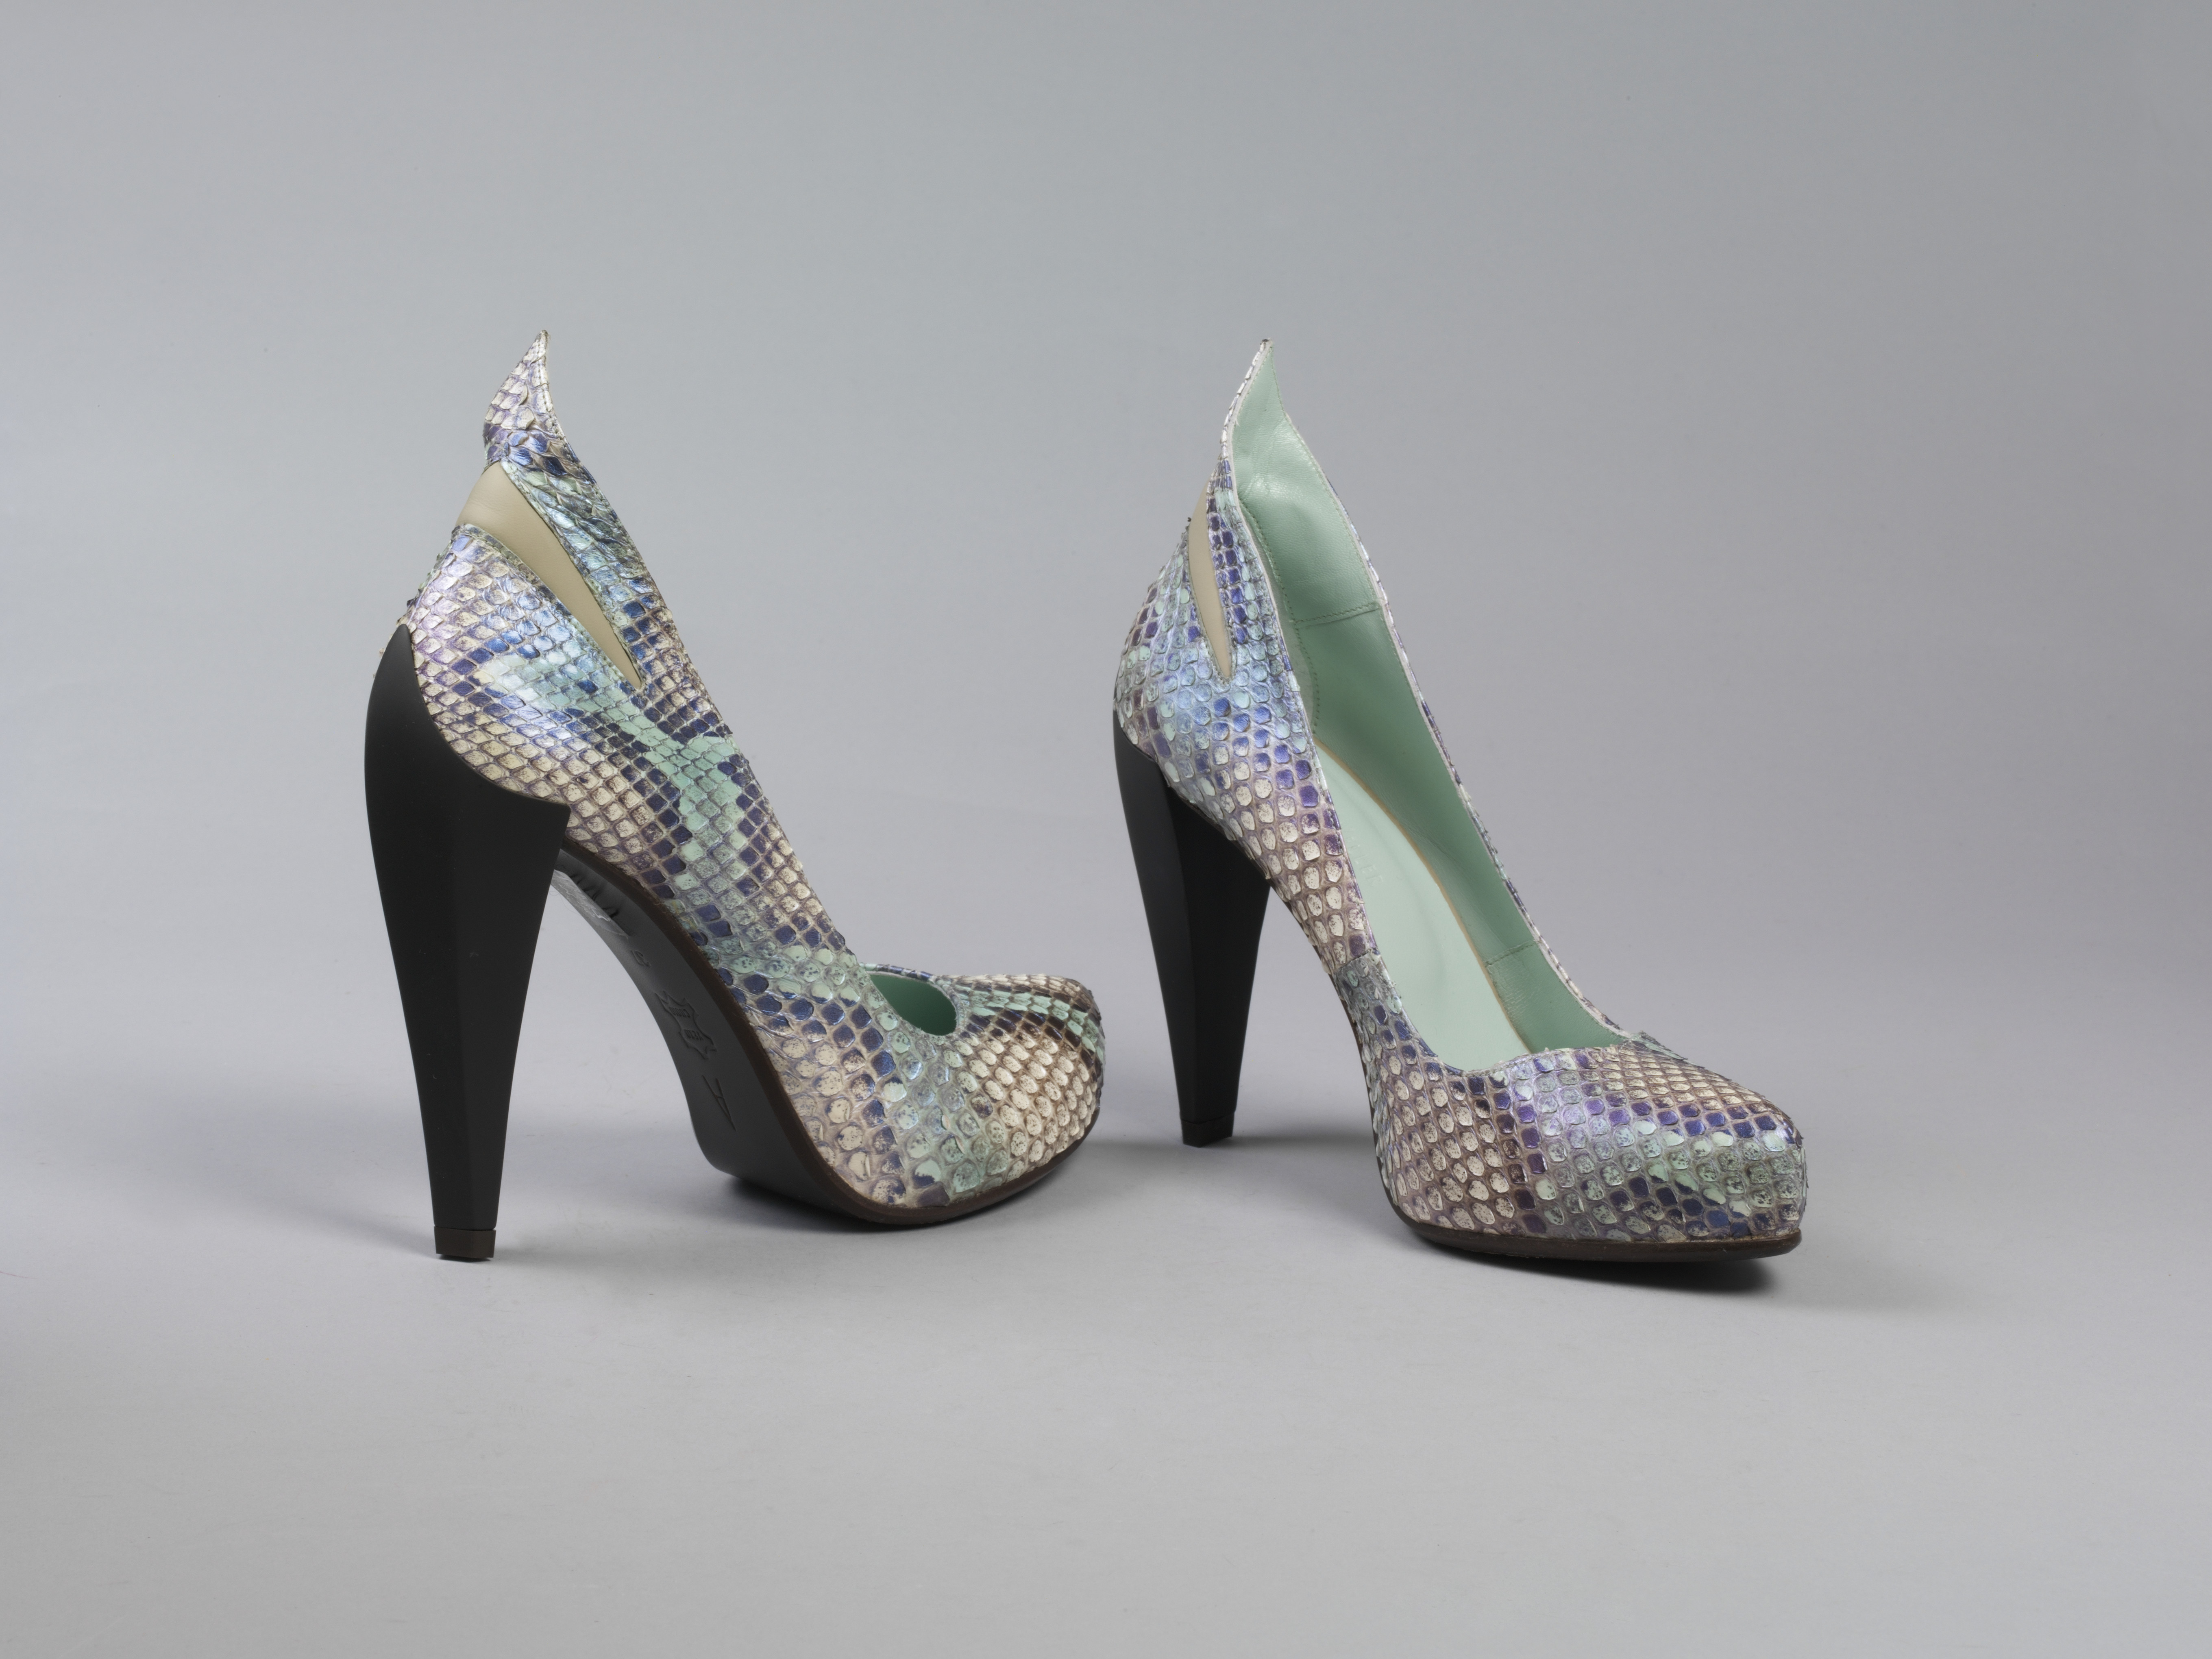 一双鞋,绿松石蛇皮高跟鞋,Spock A3, S / S 2010年亚特兰大韦勒,设计在英国,2010年在葡萄牙。